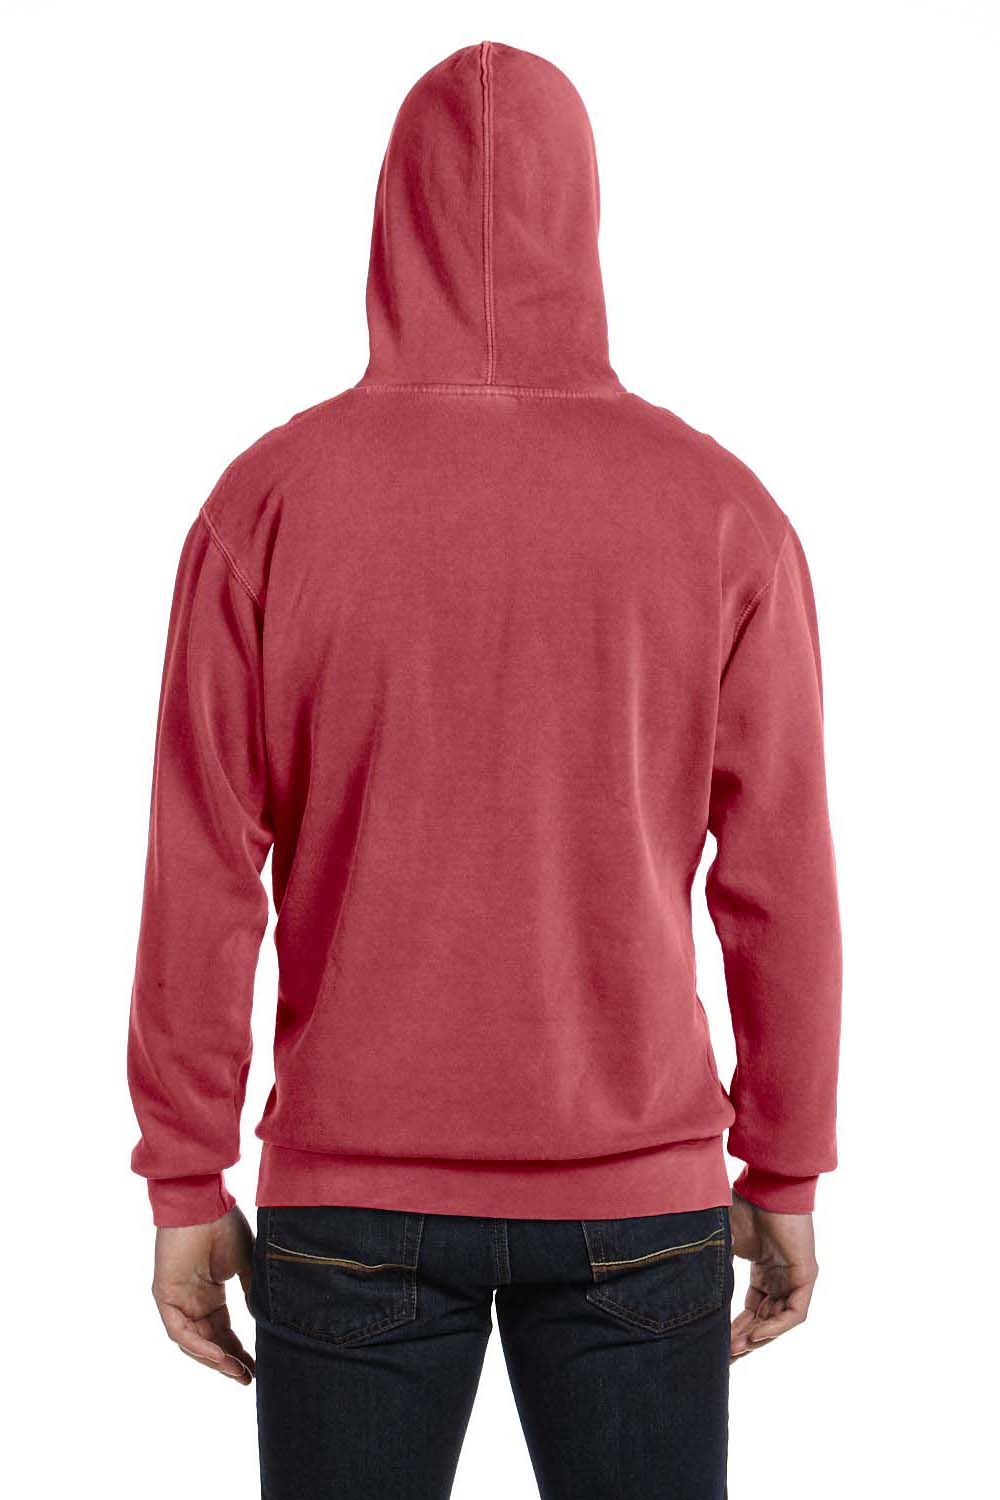 Comfort Colors 1567 Mens Hooded Sweatshirt Hoodie Crimson Red Back